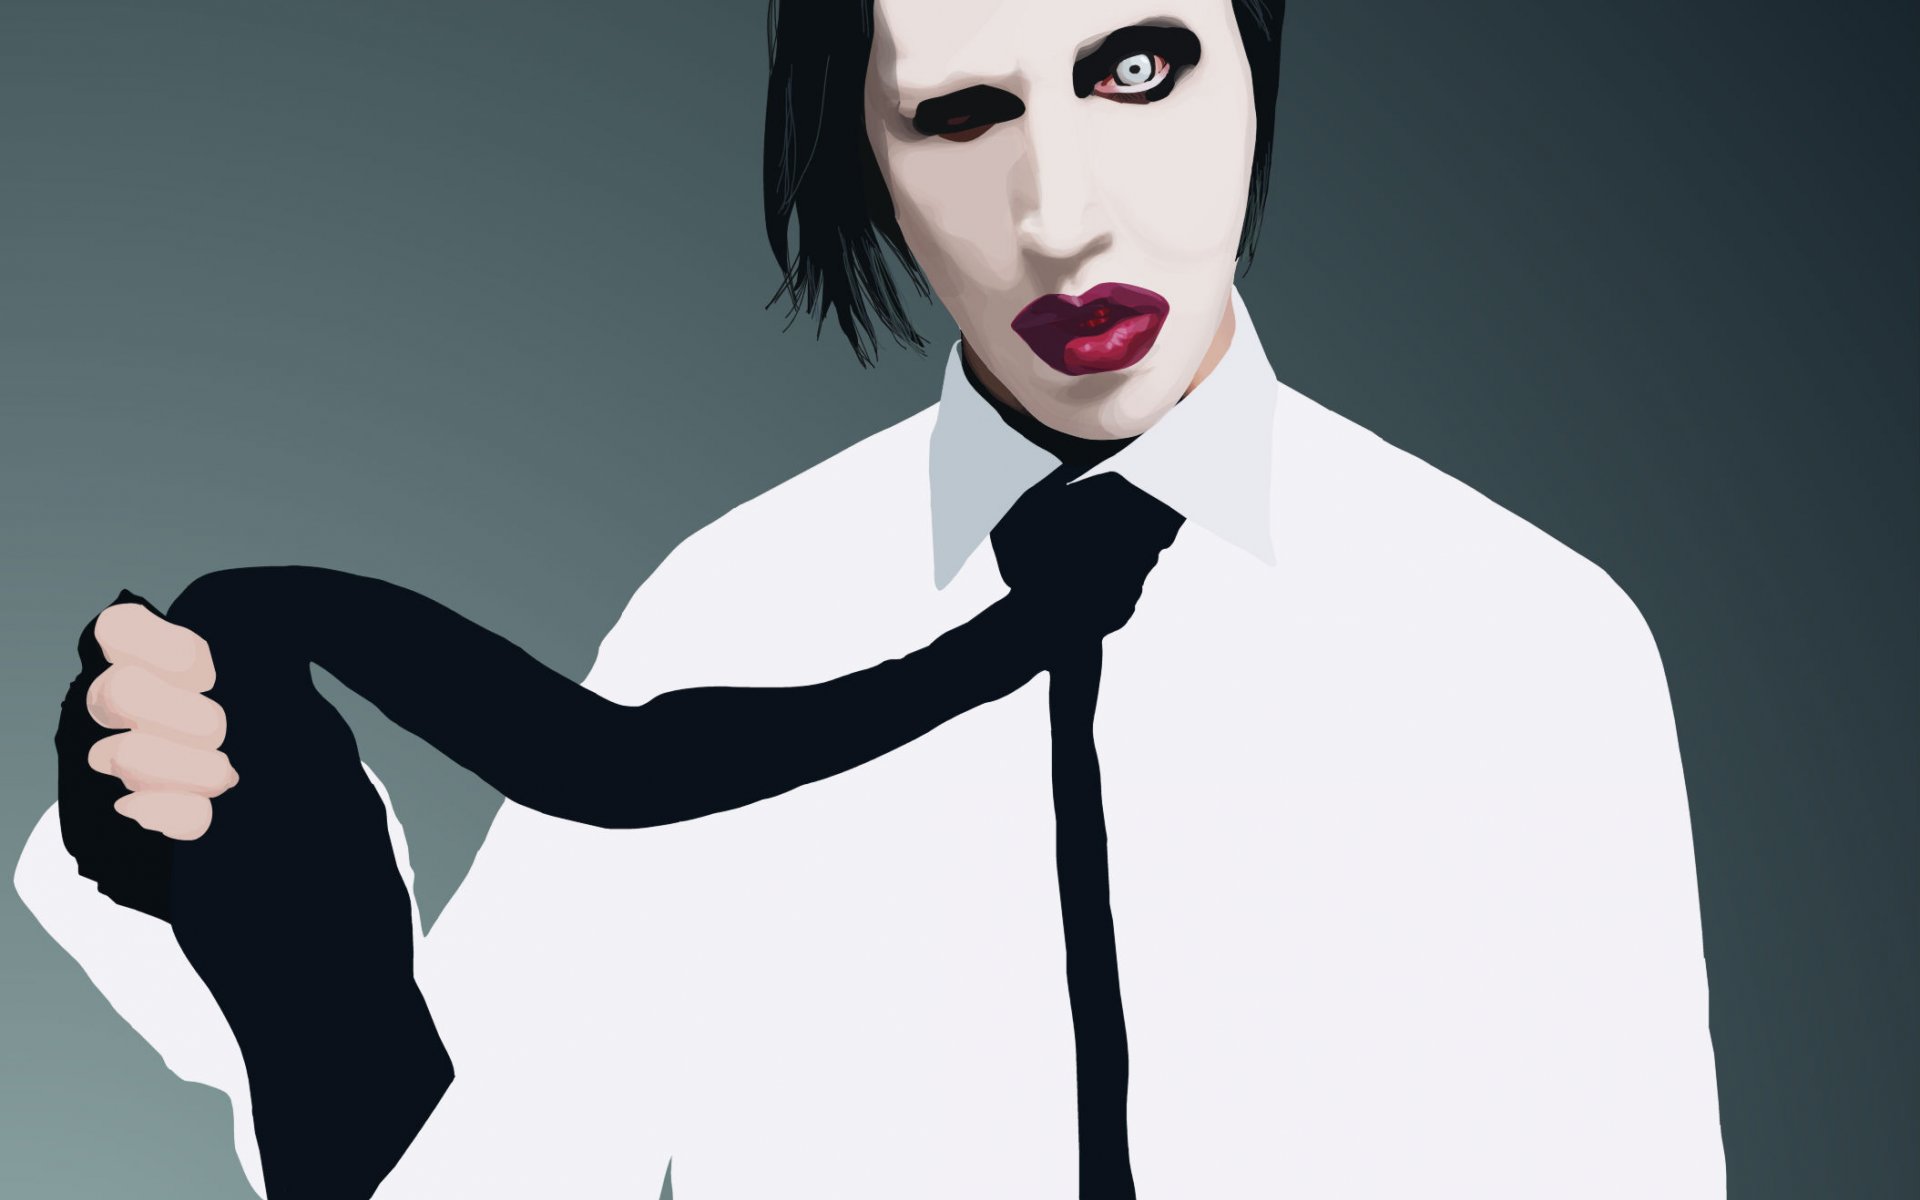 Heavy Metal Industrial Metal Marilyn Manson 1920x1200